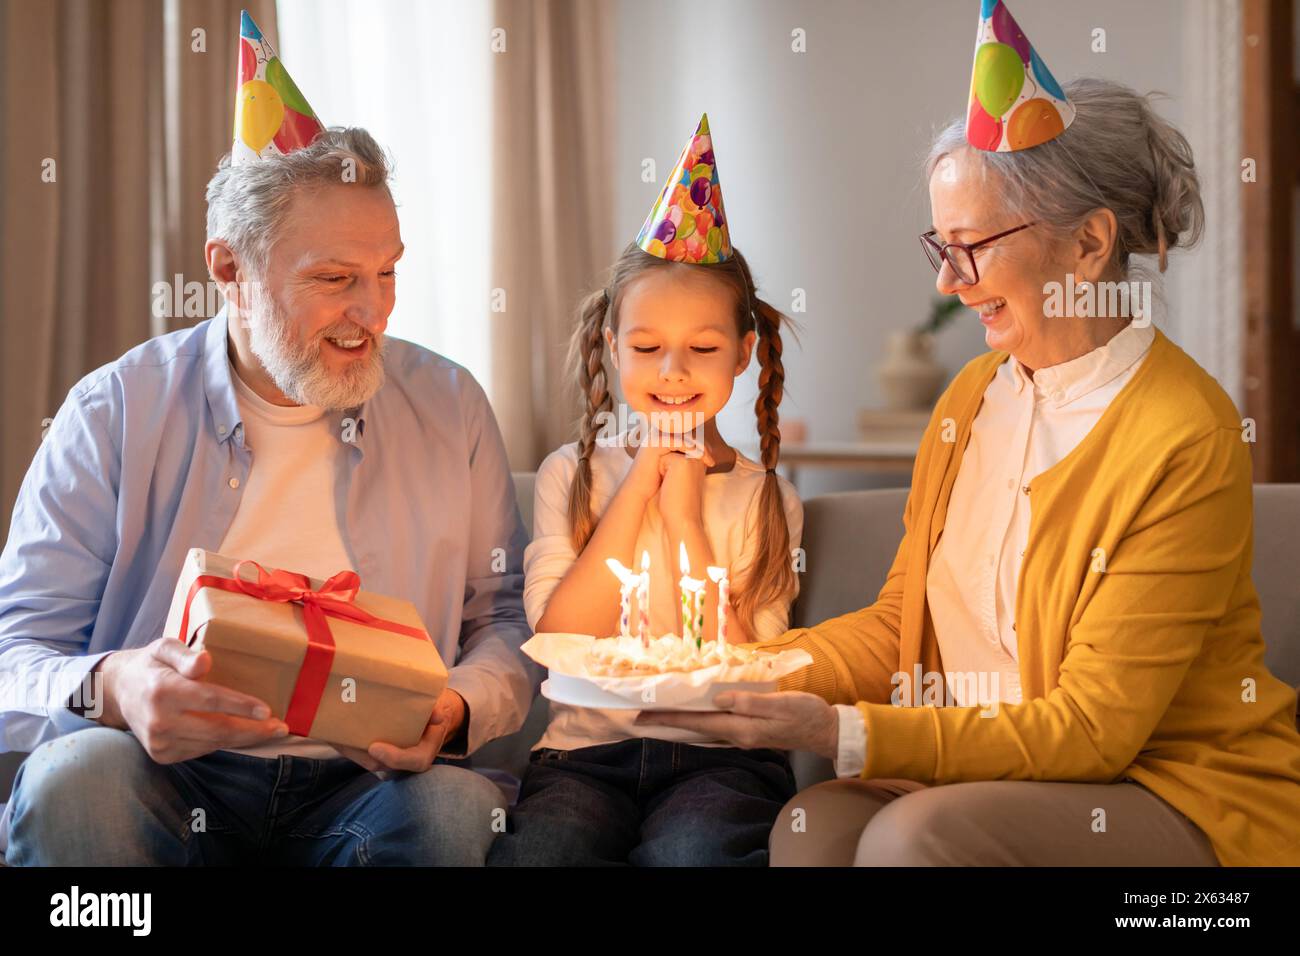 La nipote celebra il compleanno con i nonni premurosi nell'accogliente soggiorno Foto Stock